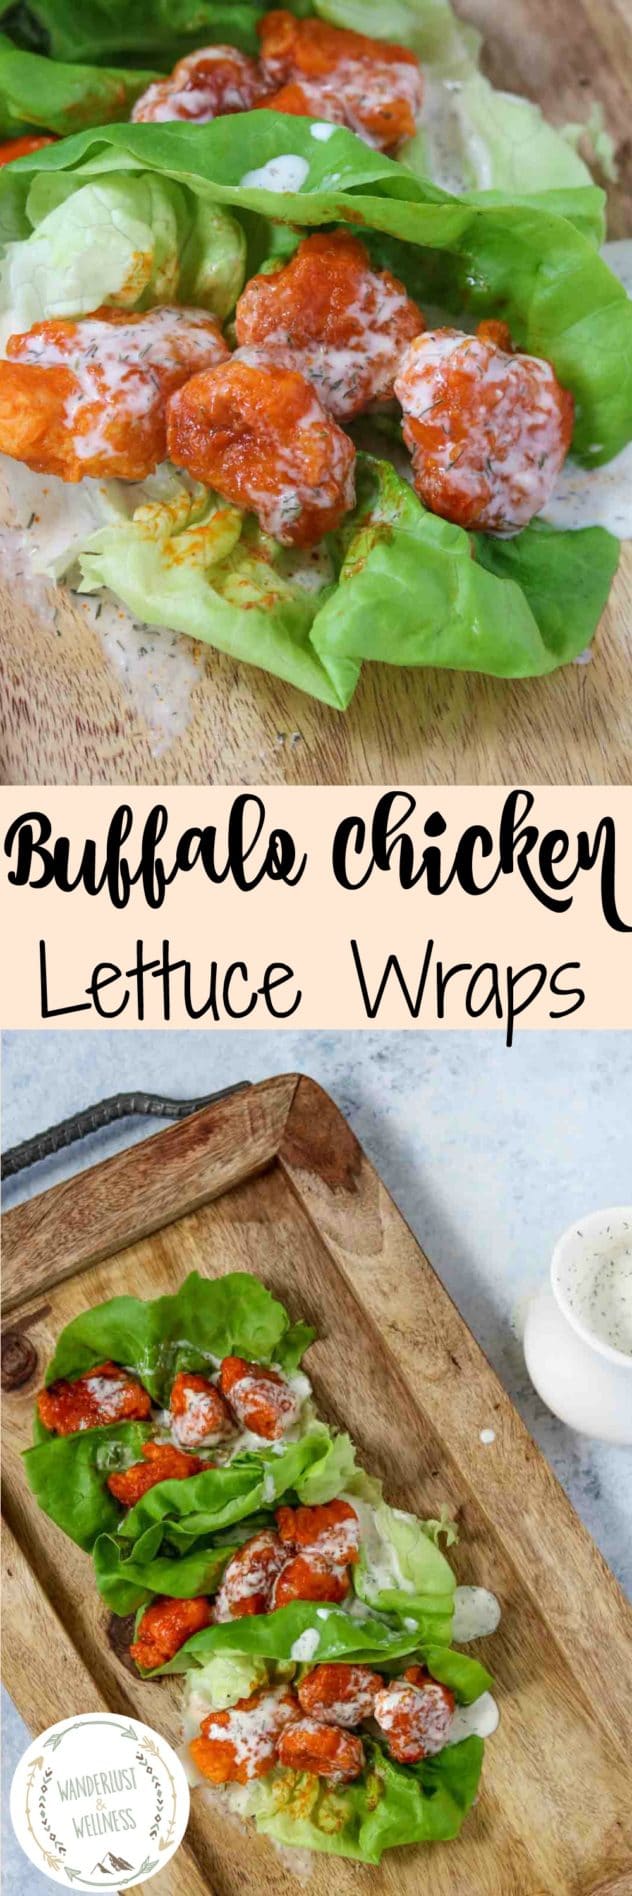 Buffalo Chicken Lettuce Wraps